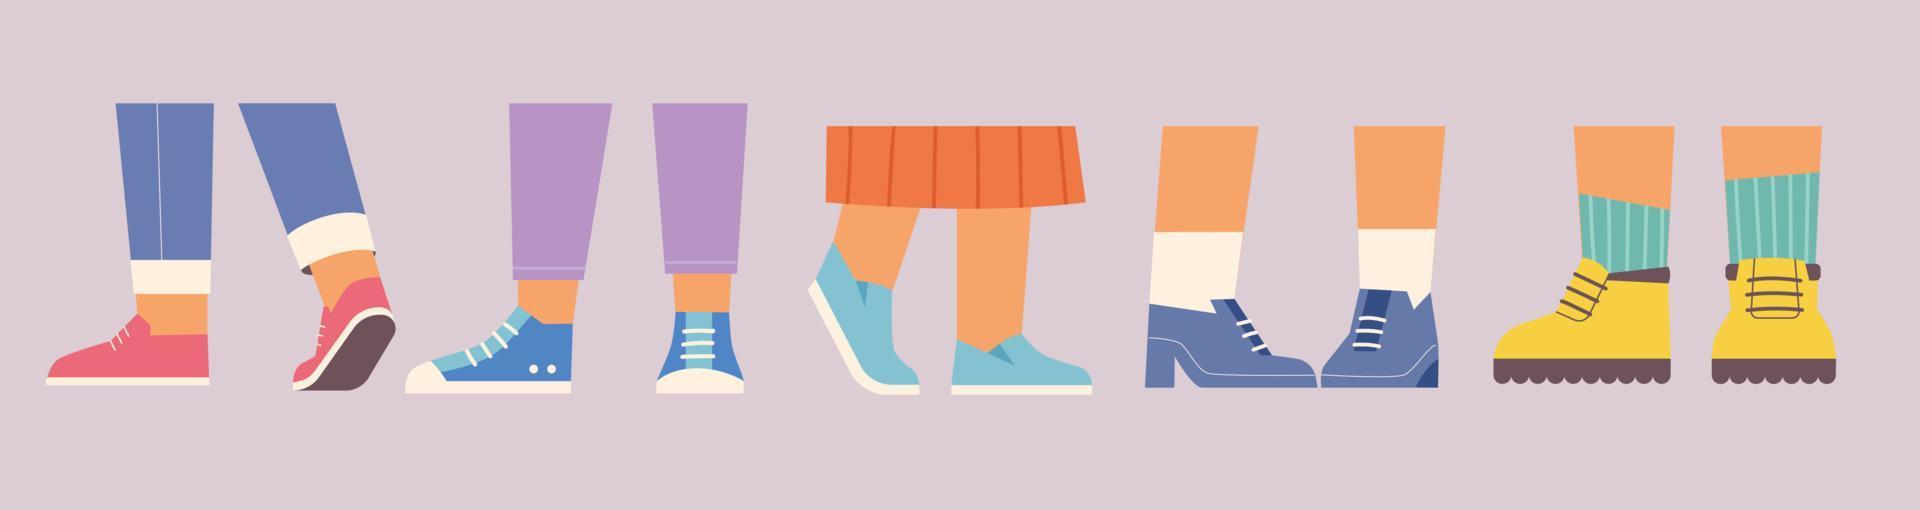 voeten van mensen in verschillende schoenen platte ontwerp stijl vectorillustratie. vector